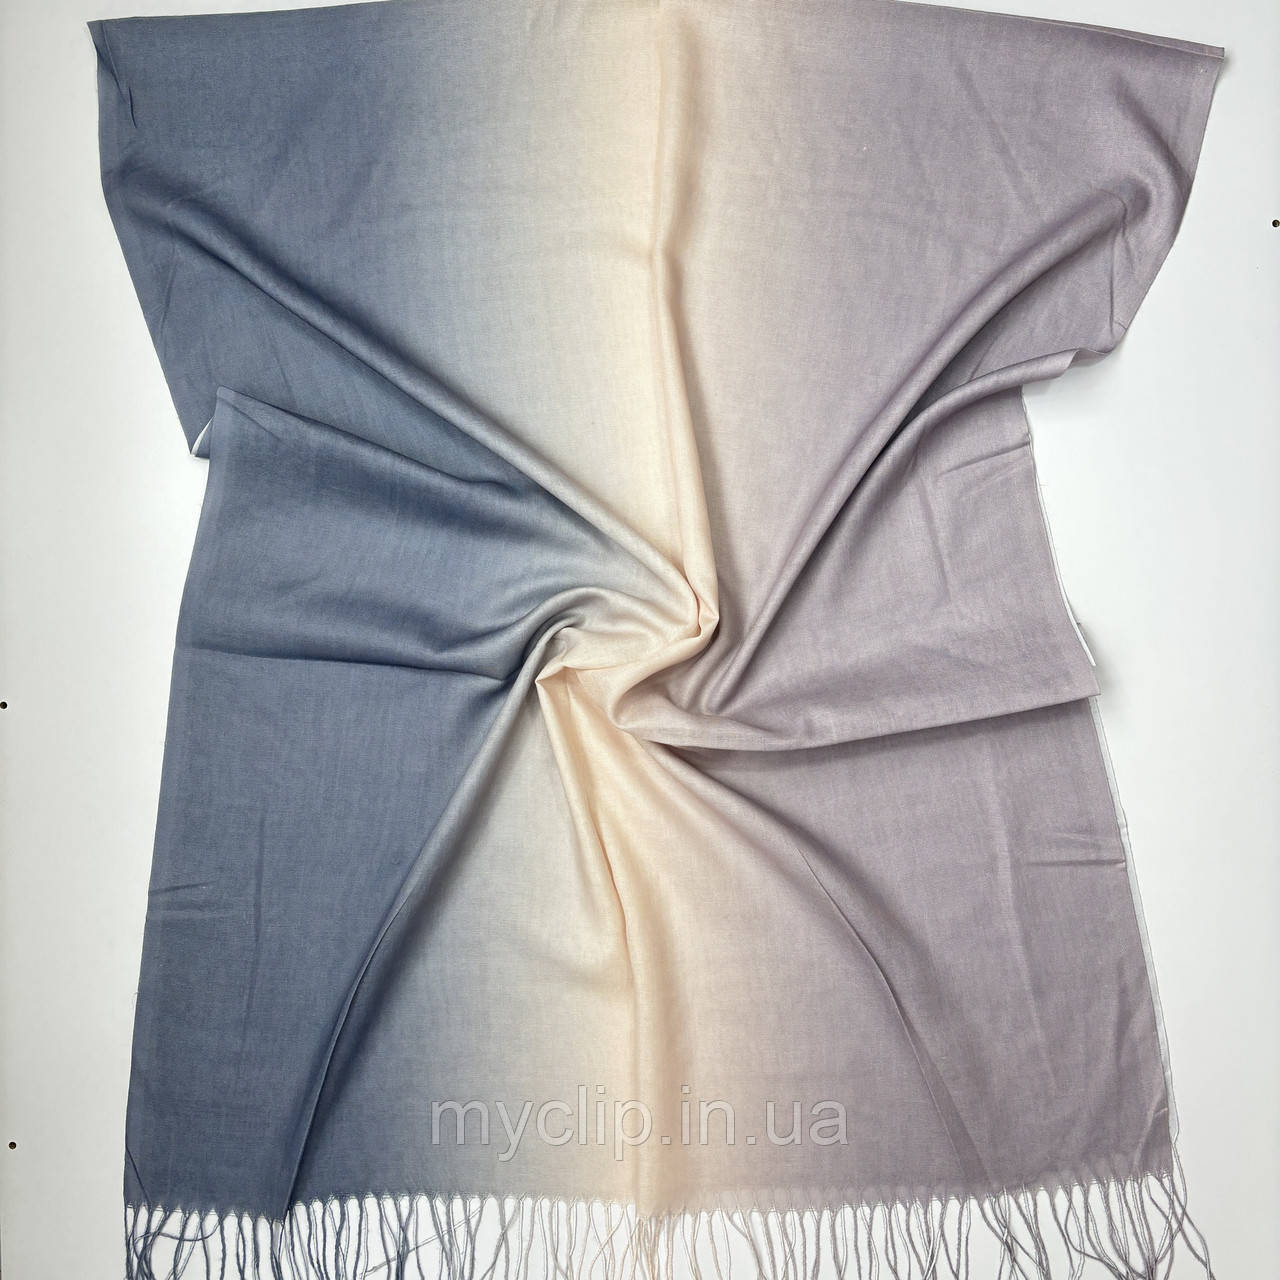 Жіночий однотонний палантин шарф з переходом кольору. Трикотажний м'який шарф на осінь і на весну із натуральної тканини